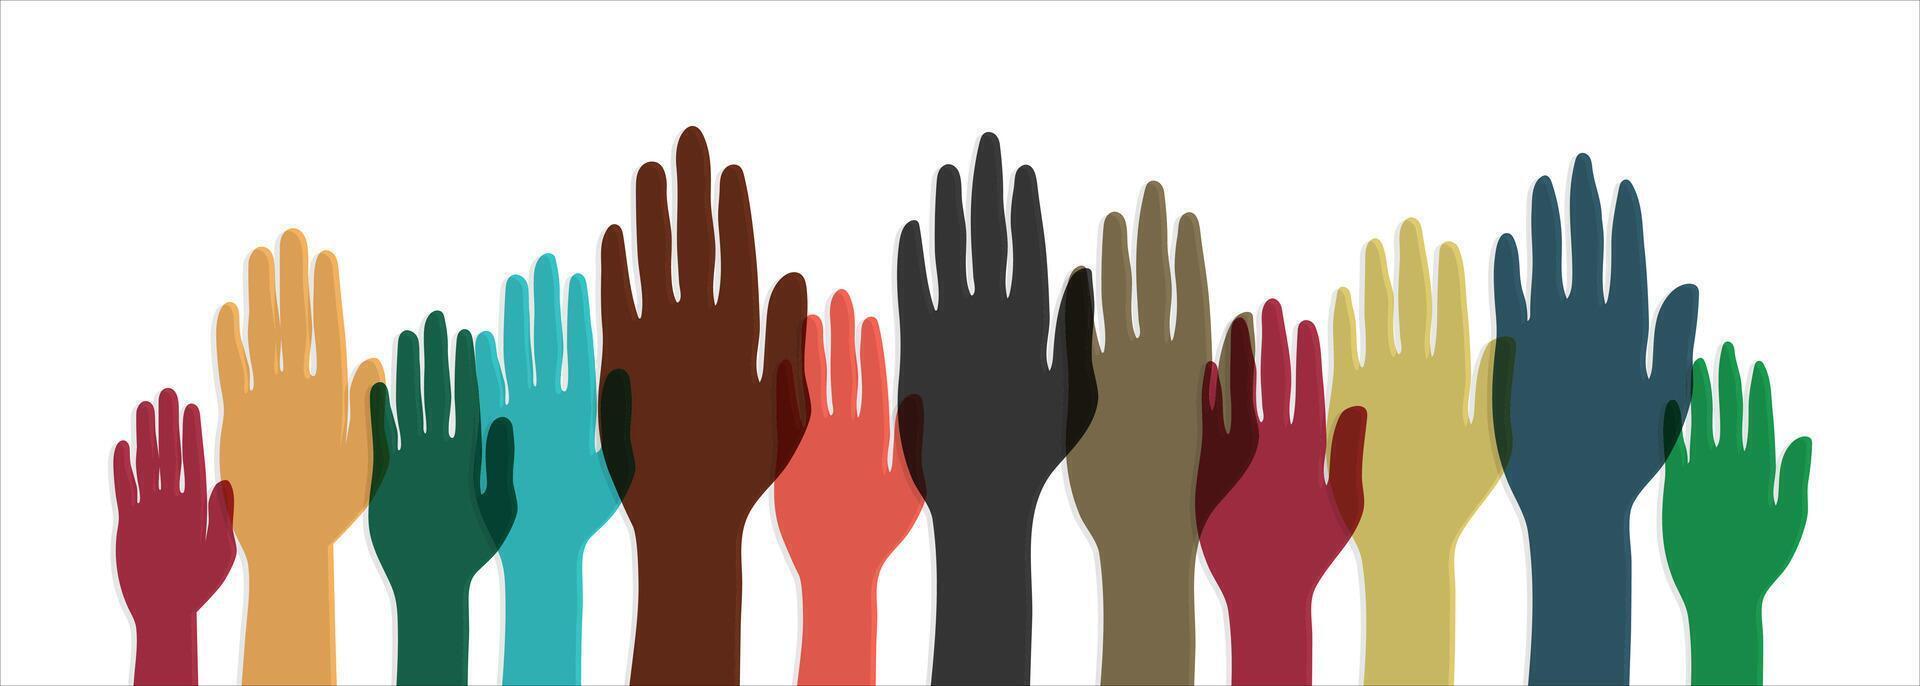 mano arriba silueta ilustración diseño en colocar, símbolo de diferencias en cultura, etnicidad, sociedad, trabajo en equipo vector